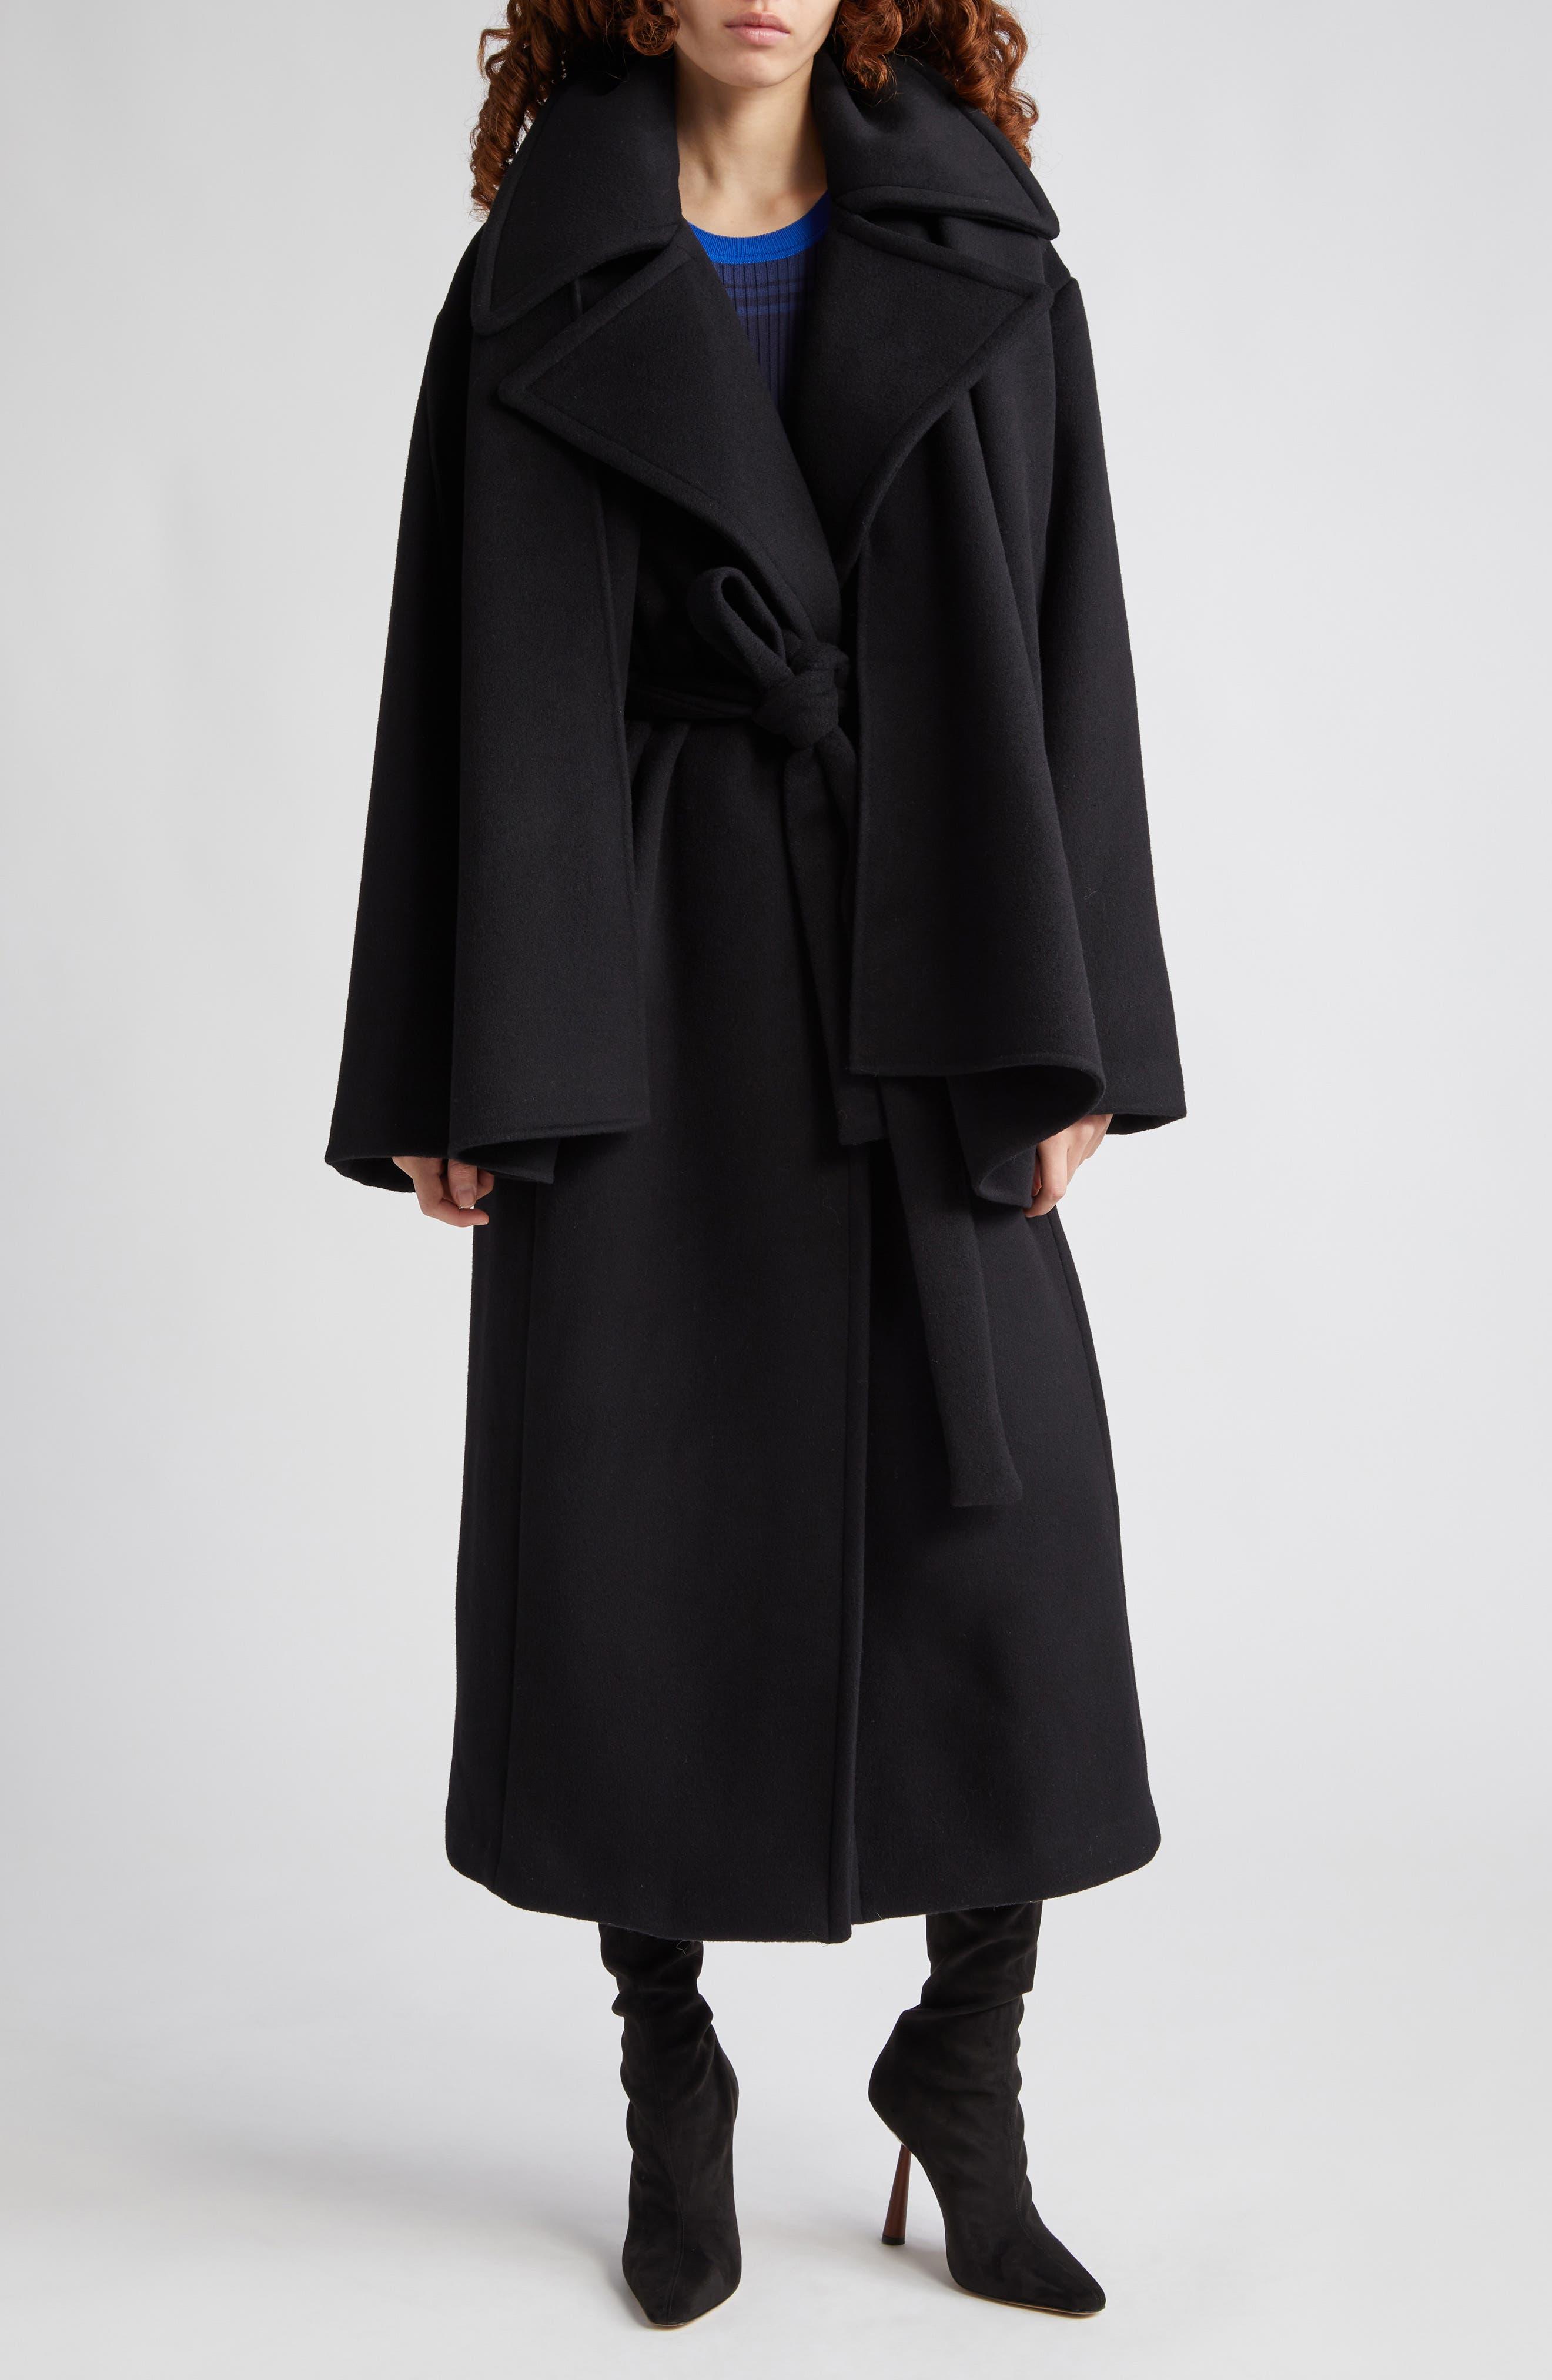 STAUD Carver Belted Wool Blend Coat in Black | Lyst